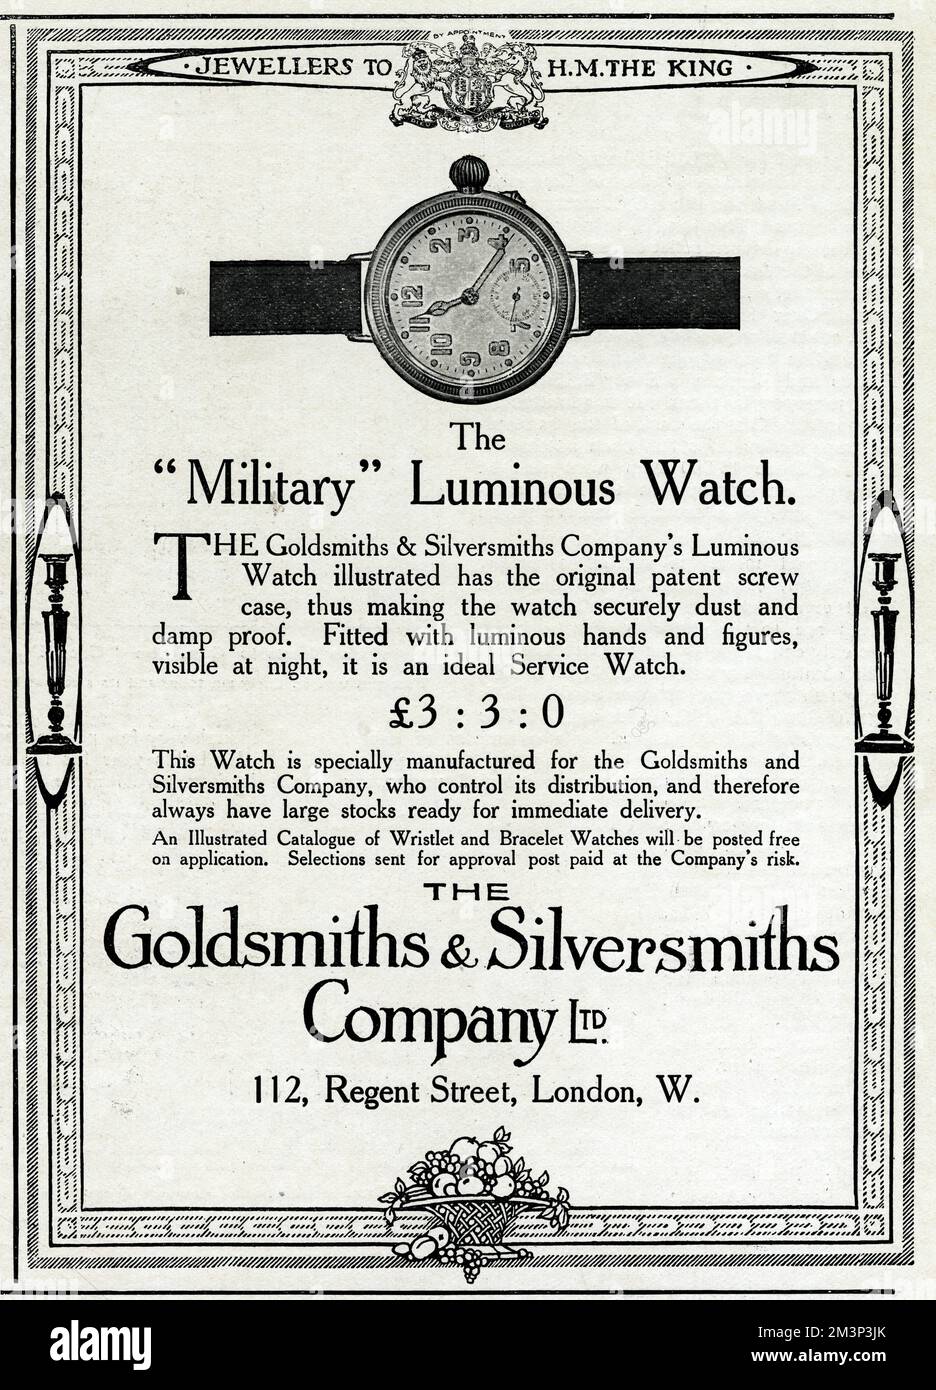 Pubblicità per la Goldsmiths &amp; Silversmiths Company Ltd, per il loro orologio luminoso 'military', con un originale astuccio a vite brevettata che lo rende sicuro da polvere e umidità e dotato di mani e figure luminose per una facile narrazione notturna - un orologio di servizio ideale. Data: 1915 Foto Stock